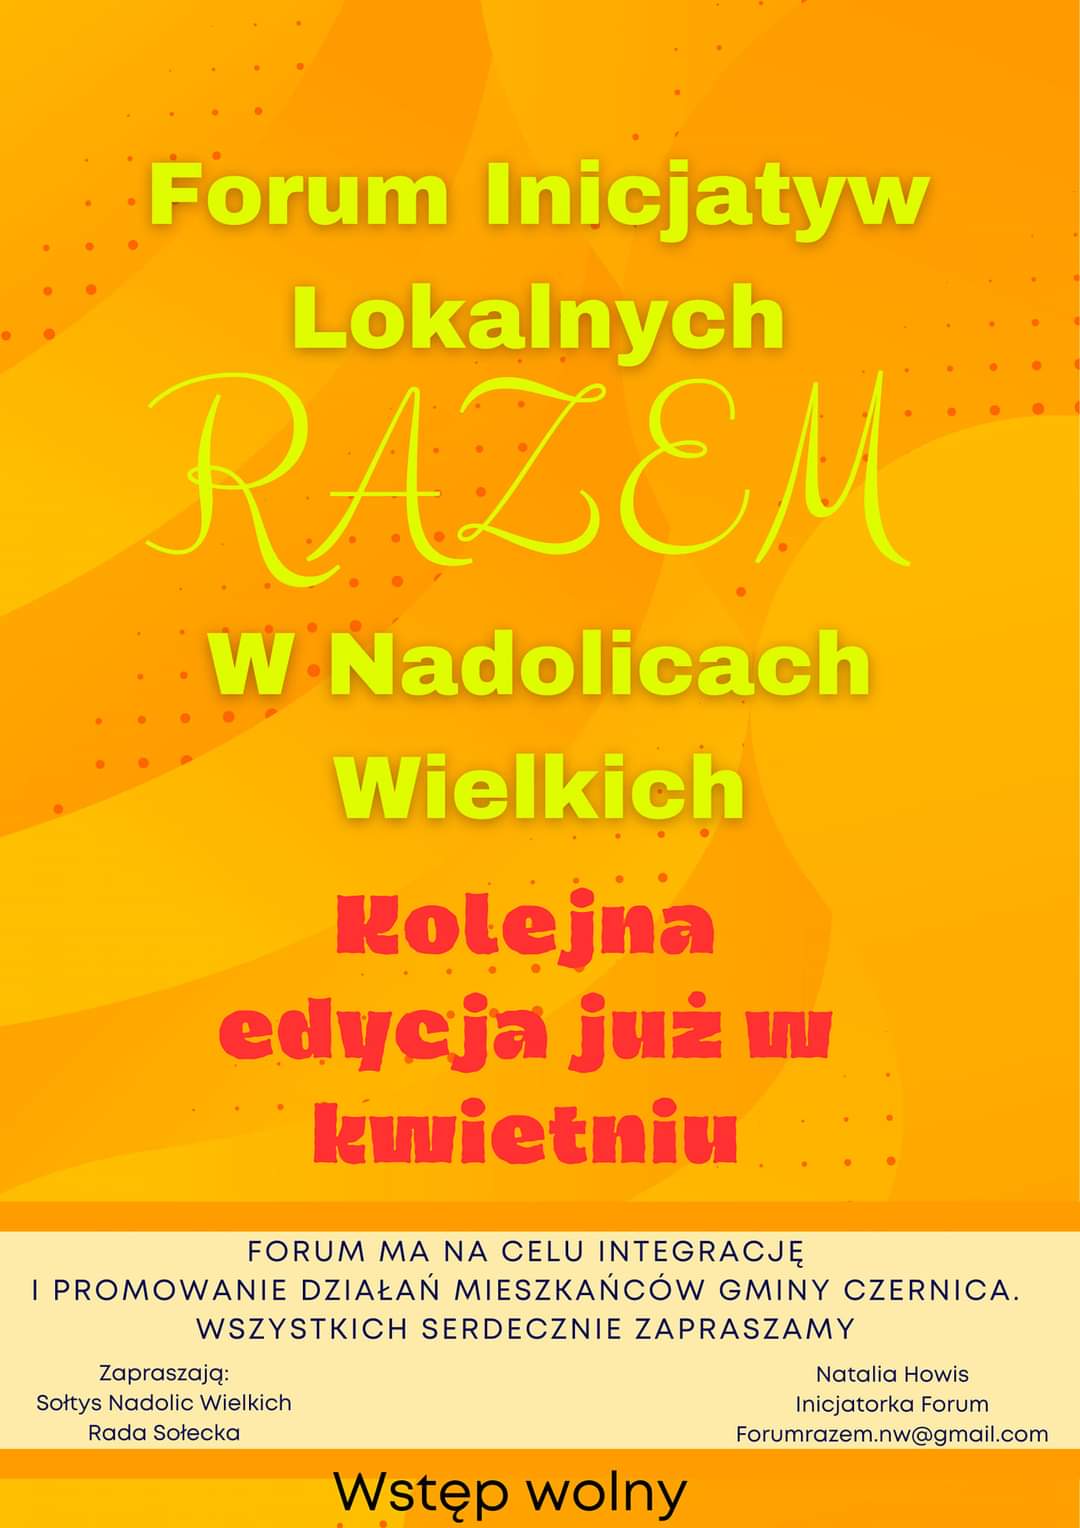 Forum Inicjatyw Lokalnych RAZEM - Kolejna edycja już w kwietniu